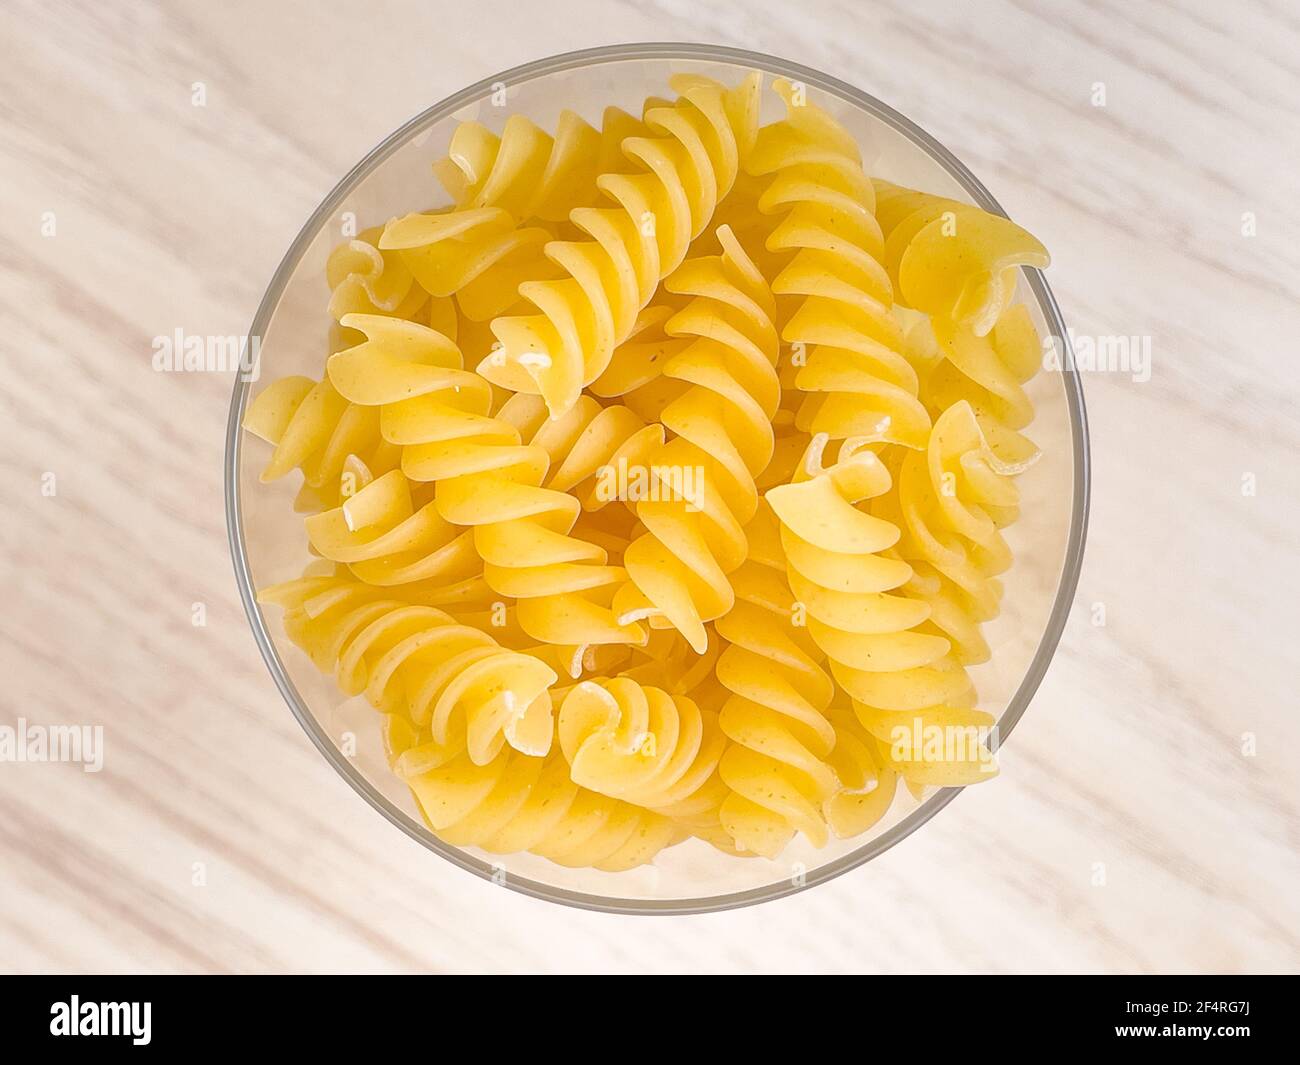 Pâtes italiennes sèches en forme de spirale en verre sur table en bois dans la cuisine. La nourriture. Macaroni non cuit Banque D'Images